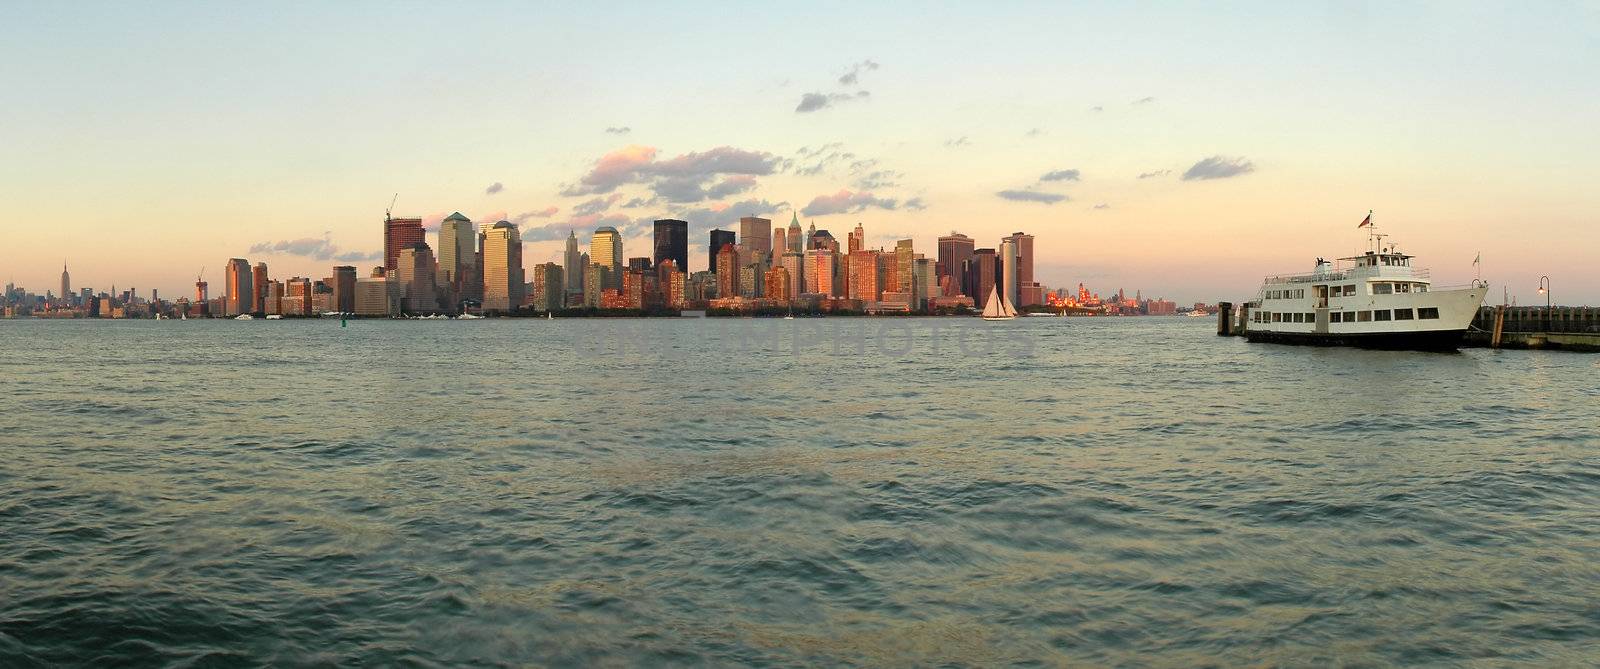 Manhattan panorama photo viewed from jersey city, white passenger boat anchoring, New York, USA